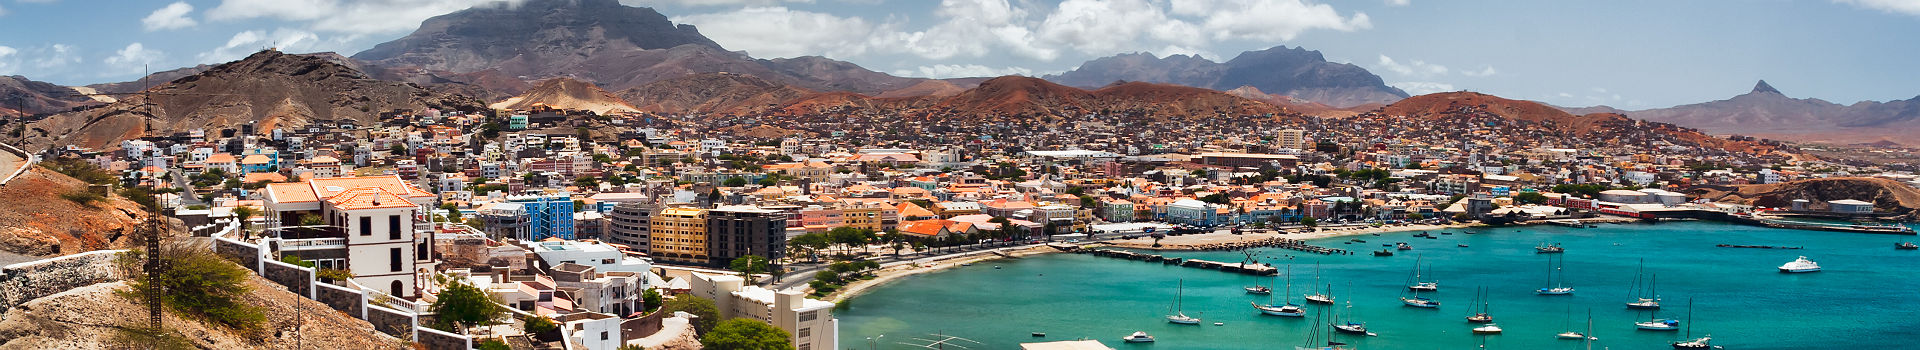 La ville de Mindelo au Cap Vert, sur l'ile São Vicente